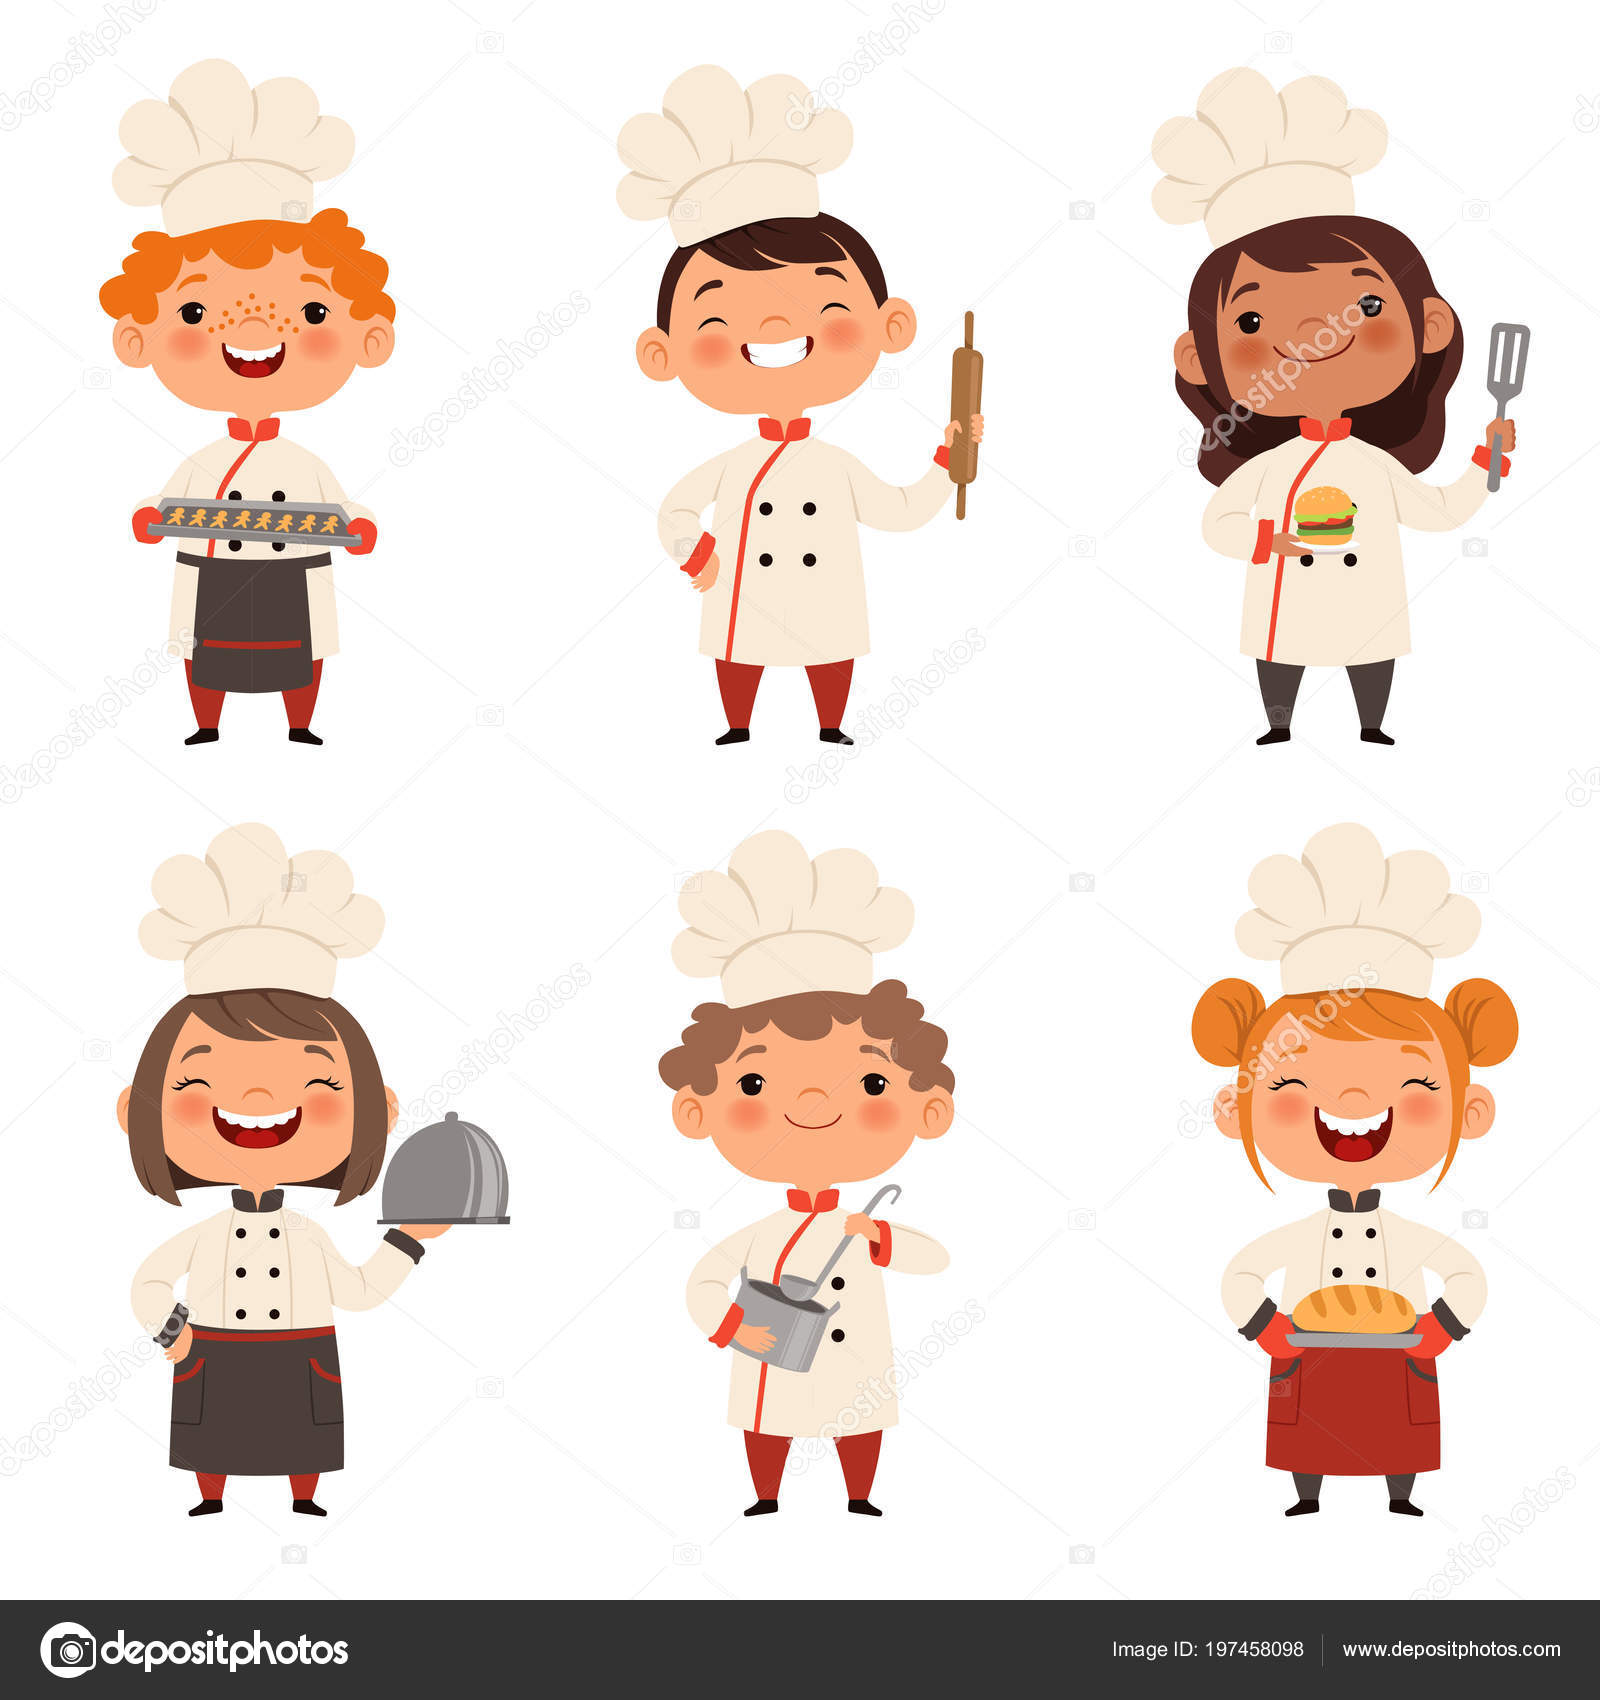 https://st4.depositphotos.com/12362248/19745/v/1600/depositphotos_197458098-stock-illustration-characters-set-of-children-cooks.jpg